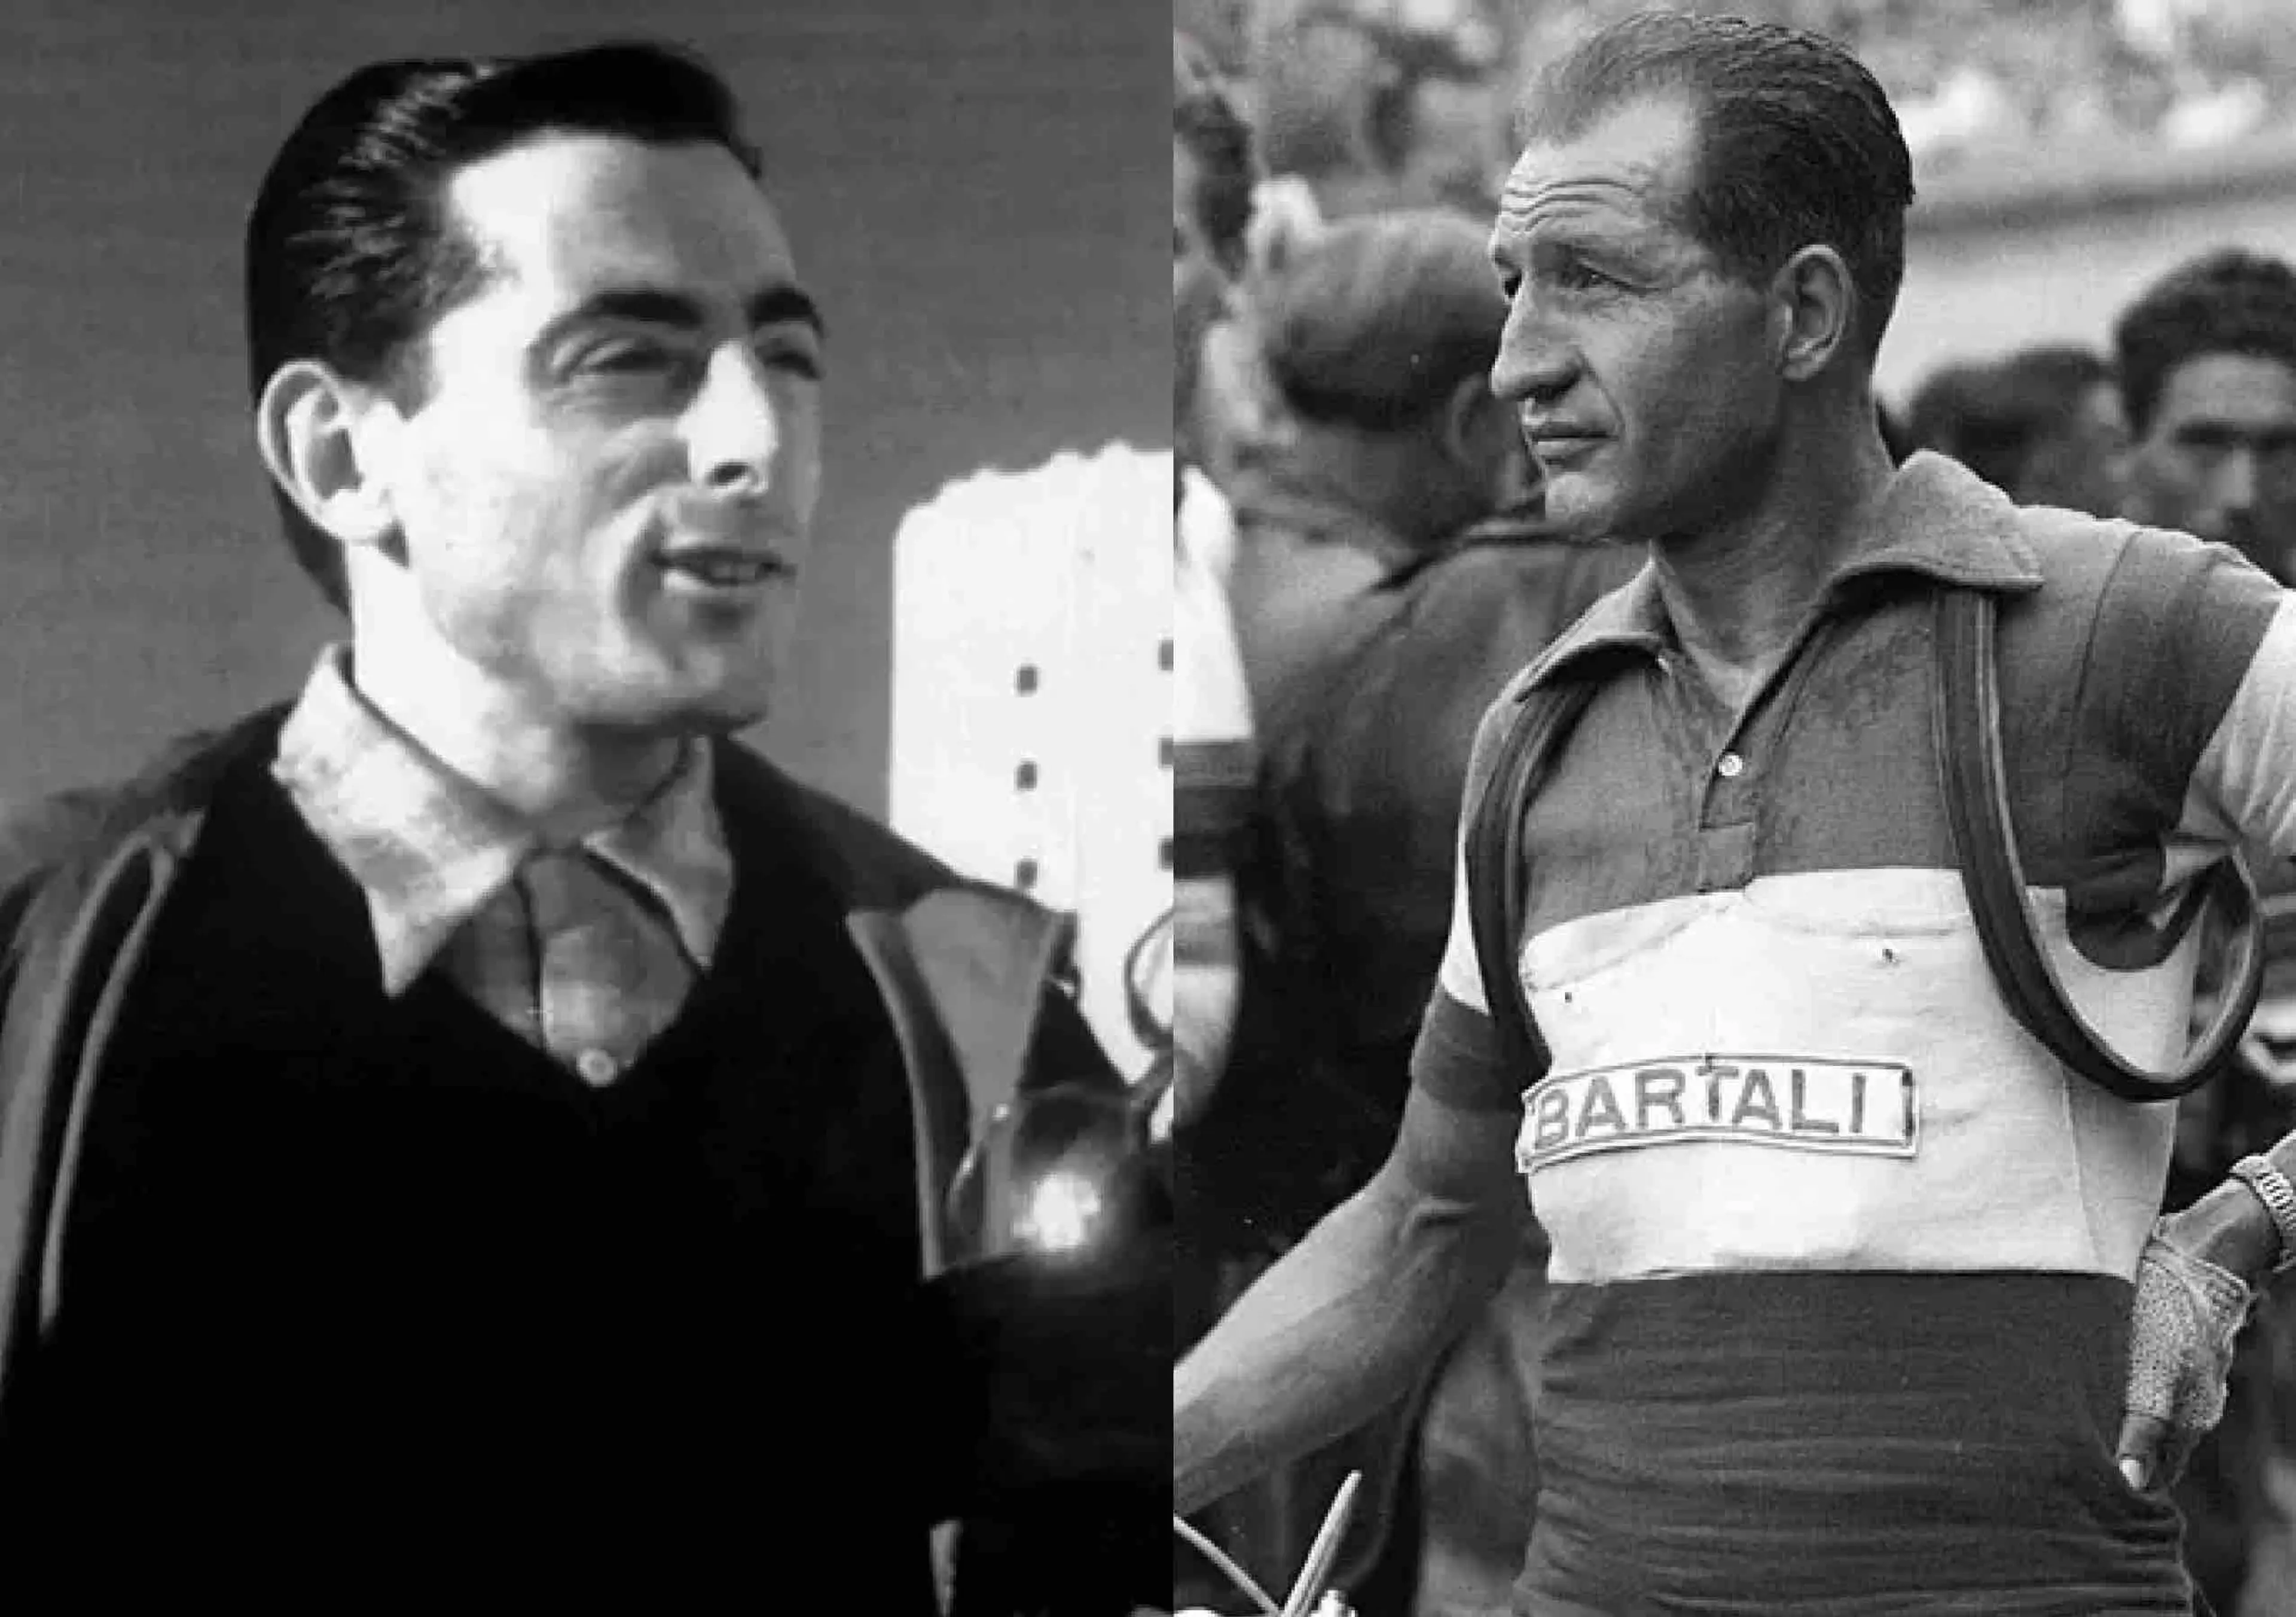 Fausto Coppi (left) and Gino Bartalli (right)